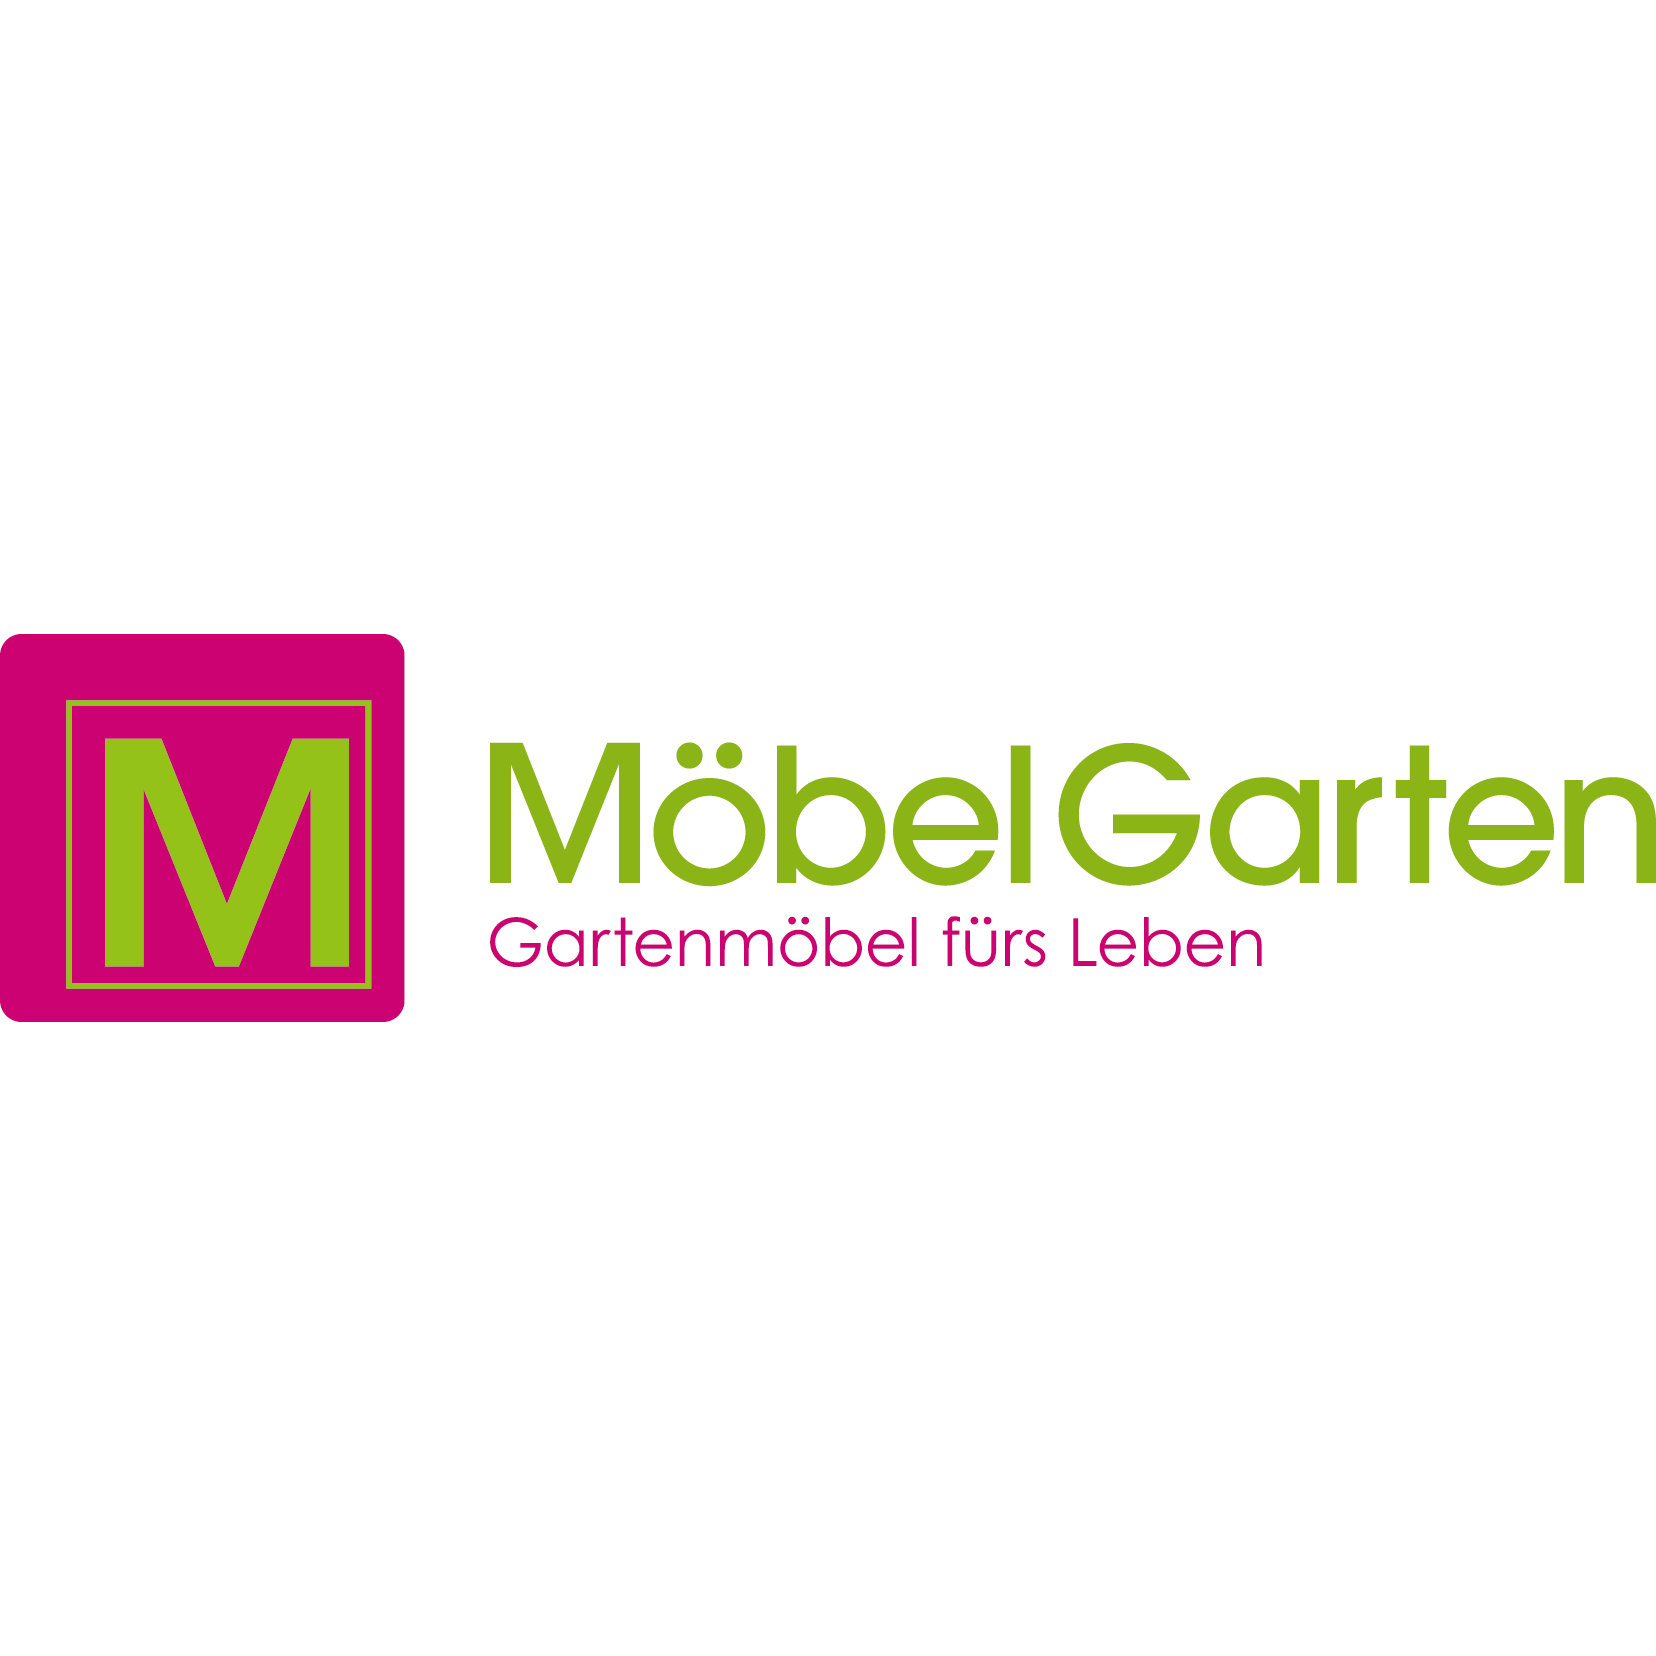 MöbelGarten GmbH - Gartenmöbel fürs Leben in Freilassing - Logo